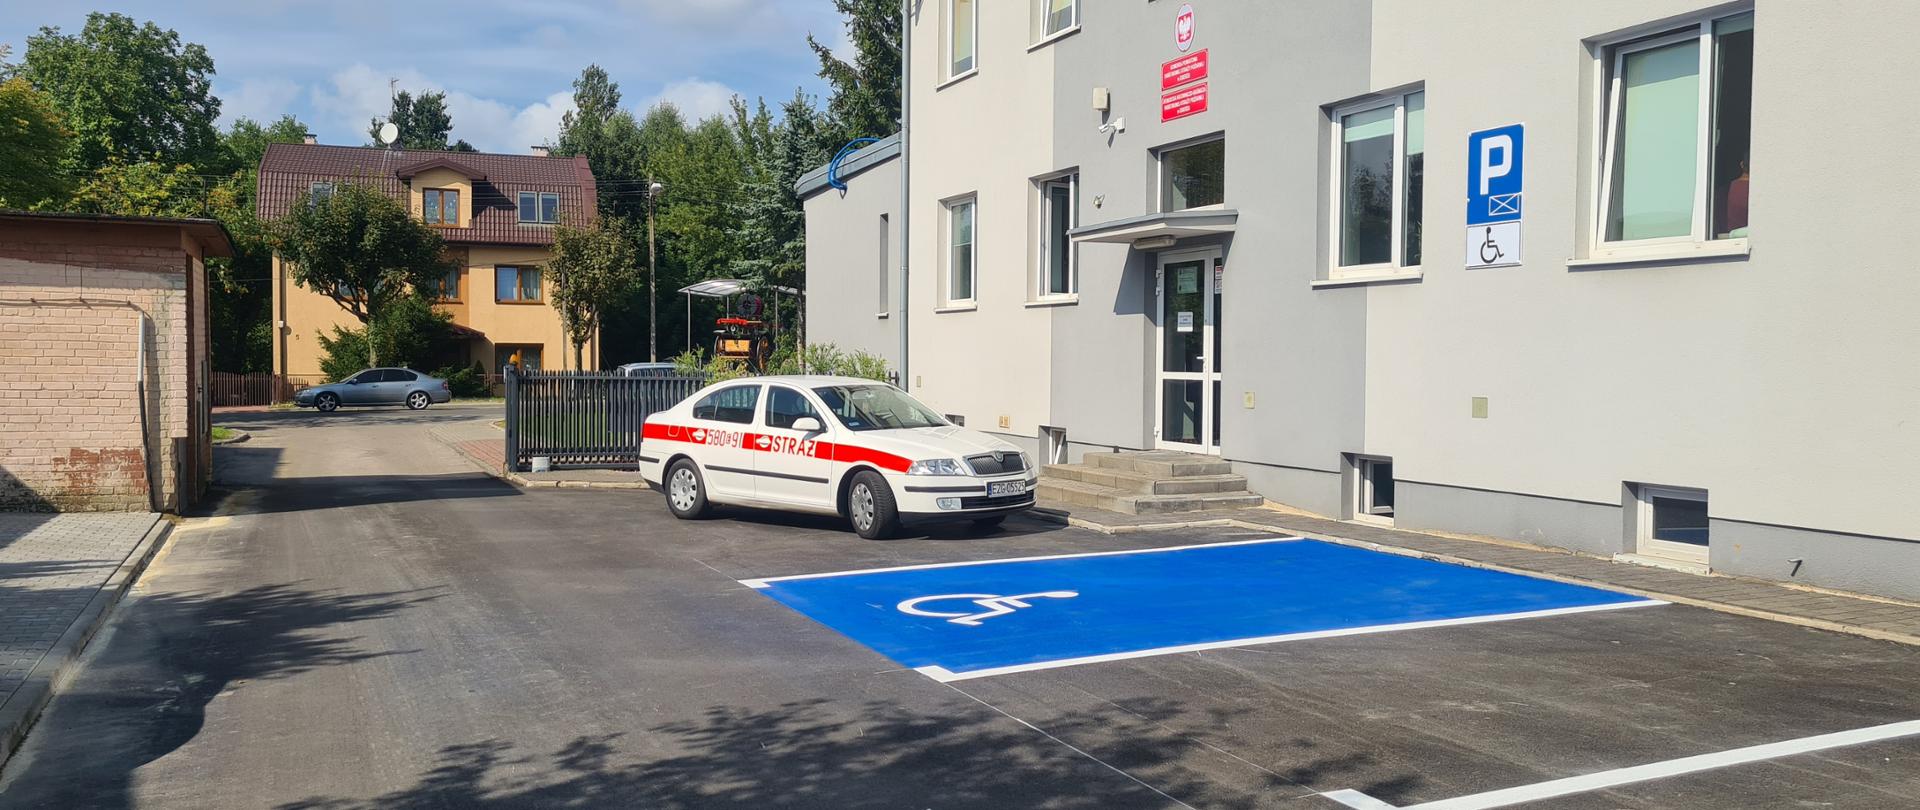 Miejsce parkingowe dla niepełnosprawnych znajduje się przy wejściu głównym do Komendy w okolicach bramy wjazdowej.